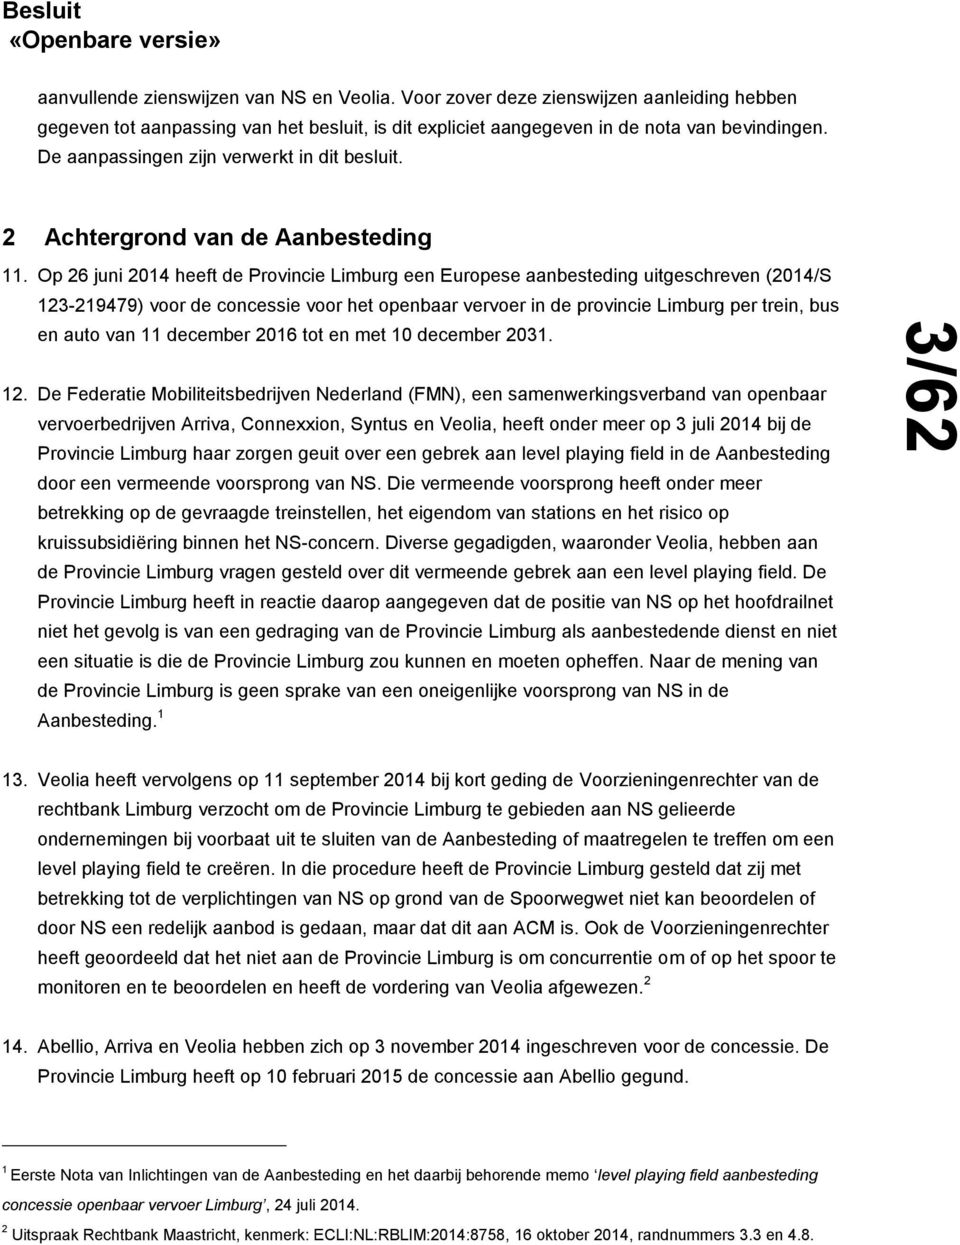 Op 26 juni 2014 heeft de Provincie Limburg een Europese aanbesteding uitgeschreven (2014/S 123-219479) voor de concessie voor het openbaar vervoer in de provincie Limburg per trein, bus en auto van